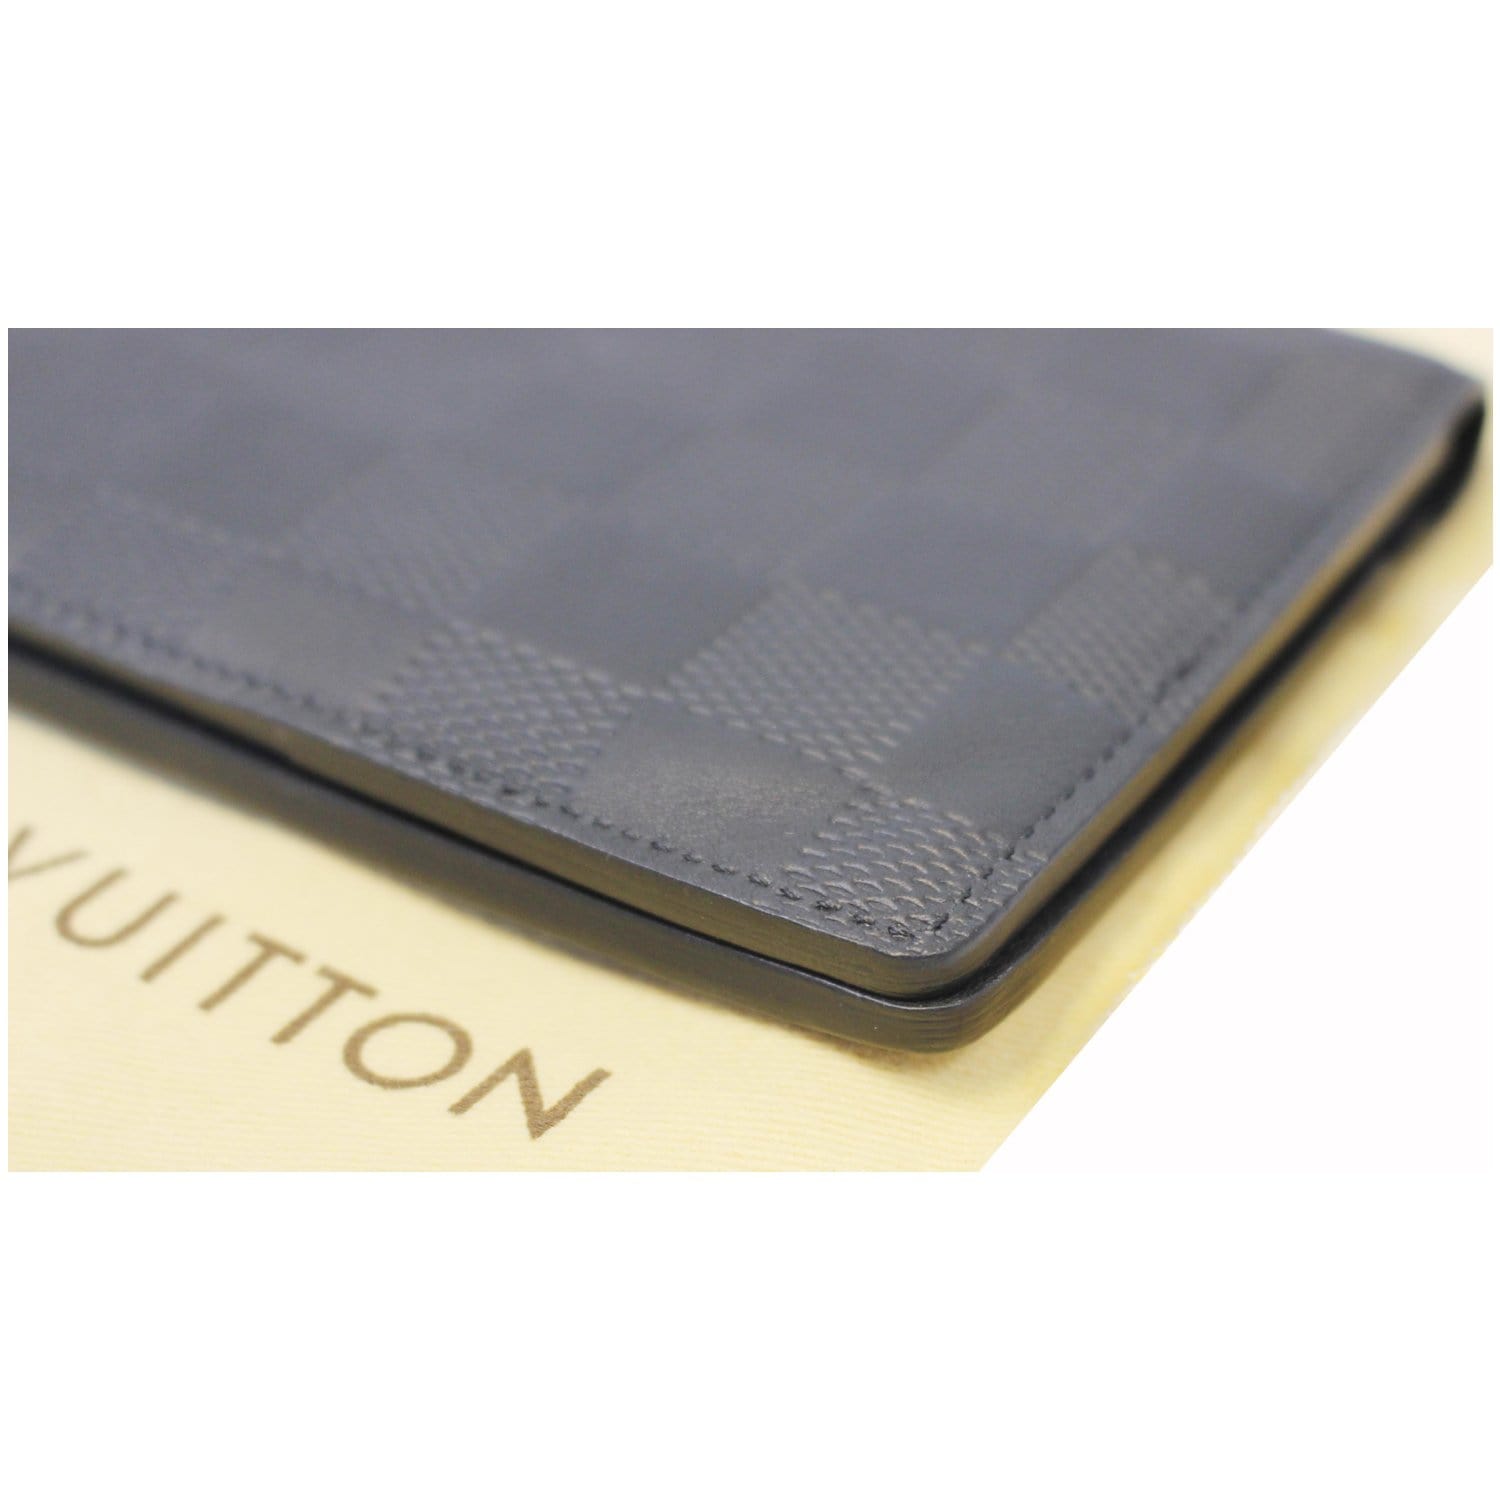 Auth Louis Vuitton Damier Infini Organizer De Poche N63012 Card Case Onyx